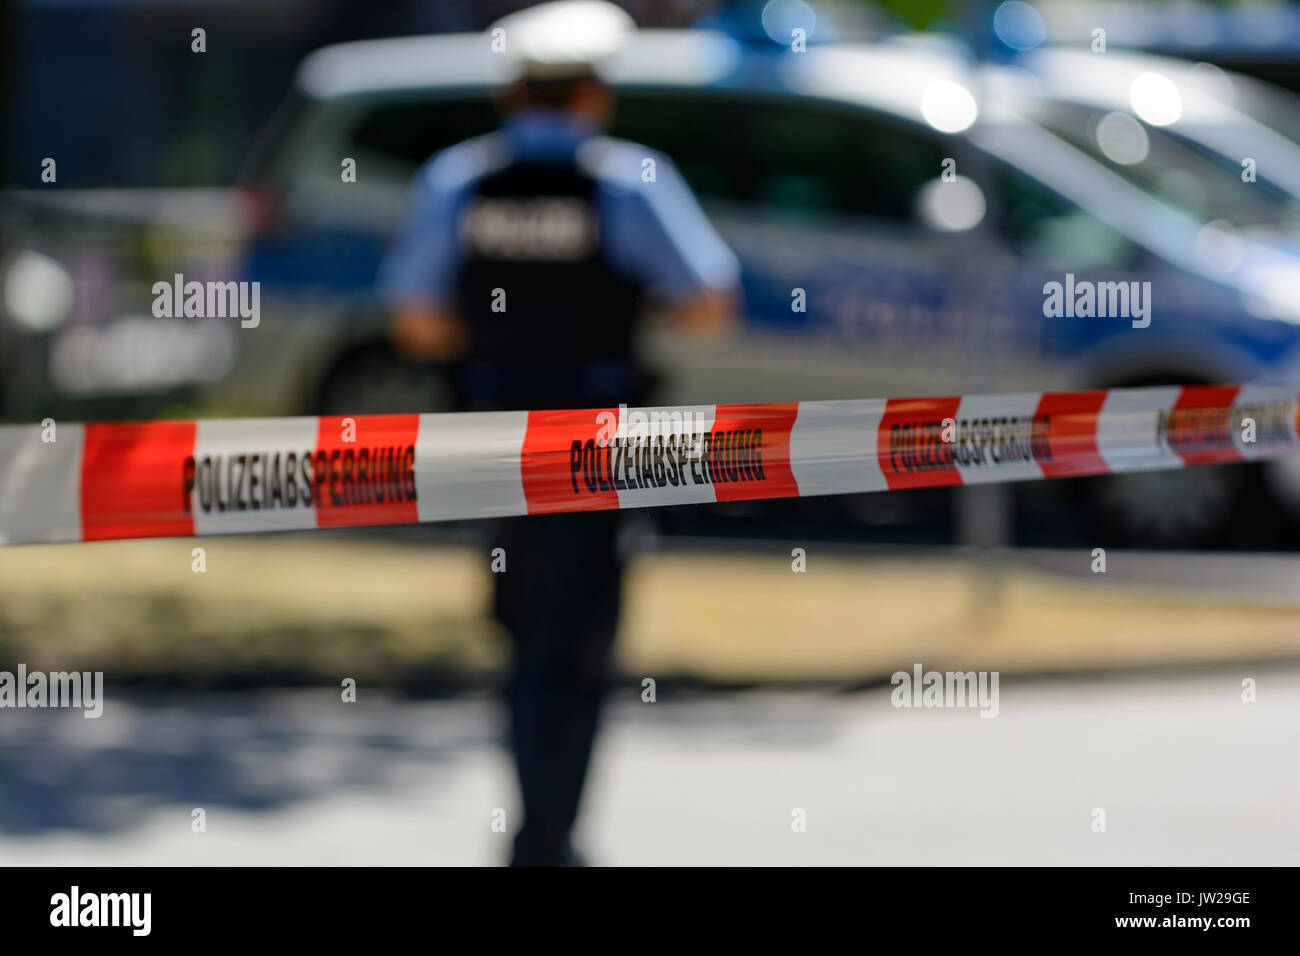 Cordone di polizia con nastro di barriera, sul retro pattuglia delle vetture e funzionari di polizia, Frankfurt am Main, Germania Foto Stock